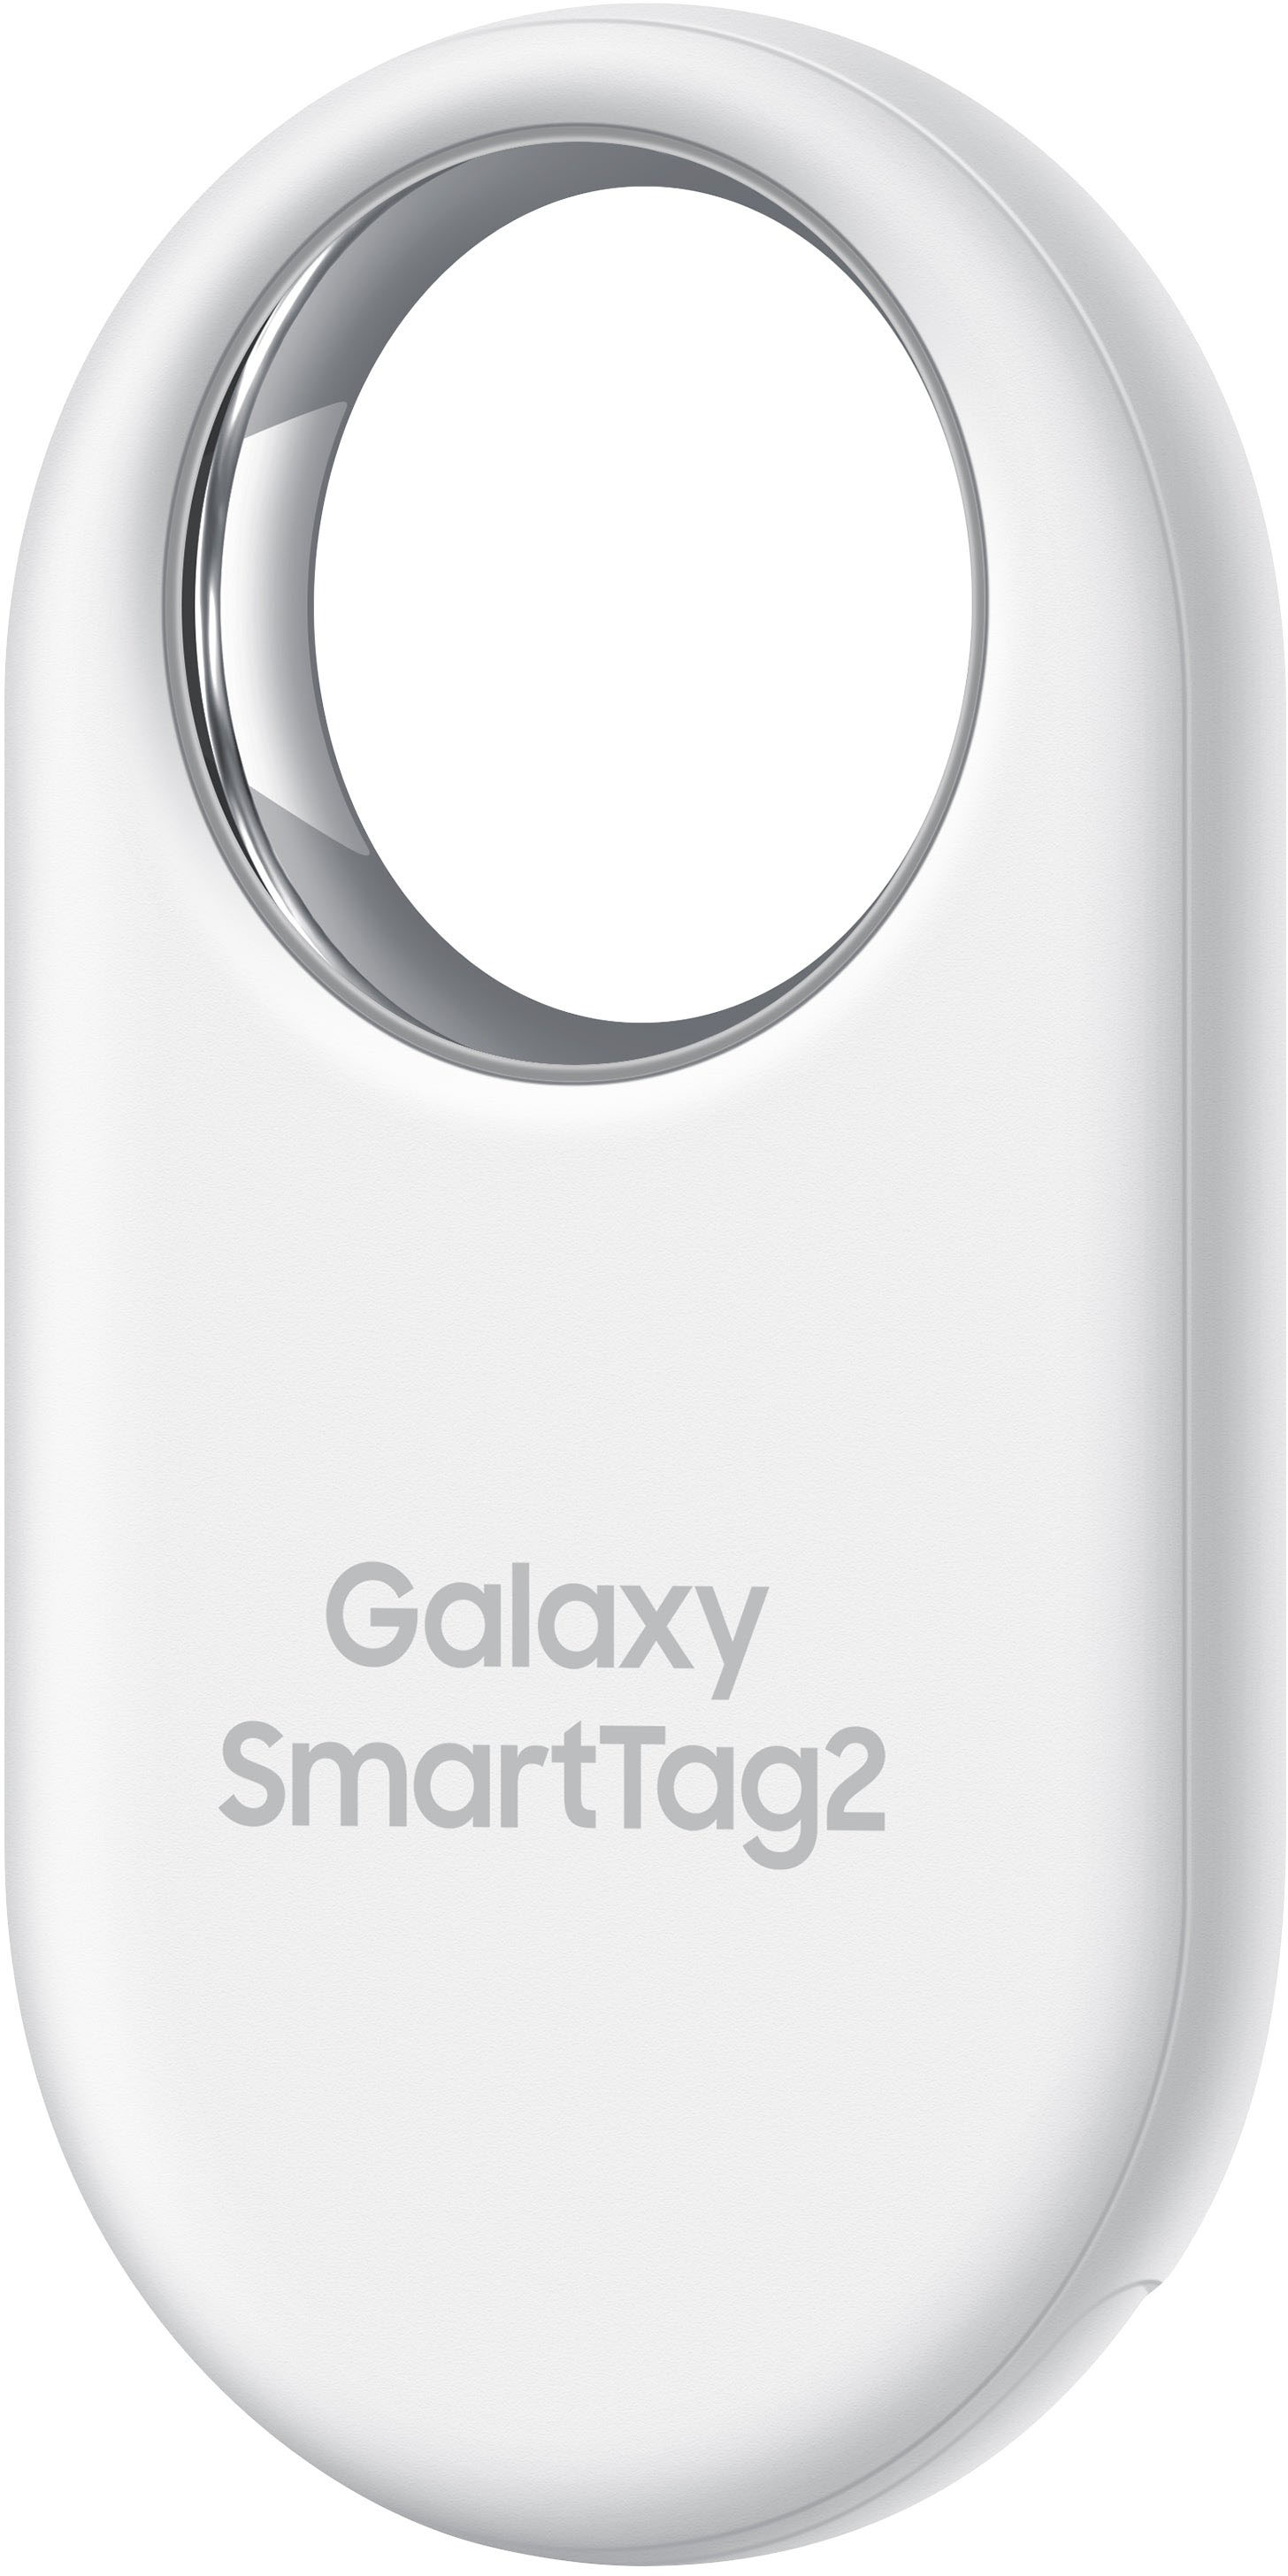 Buy Samsung Galaxy SmartTag 2